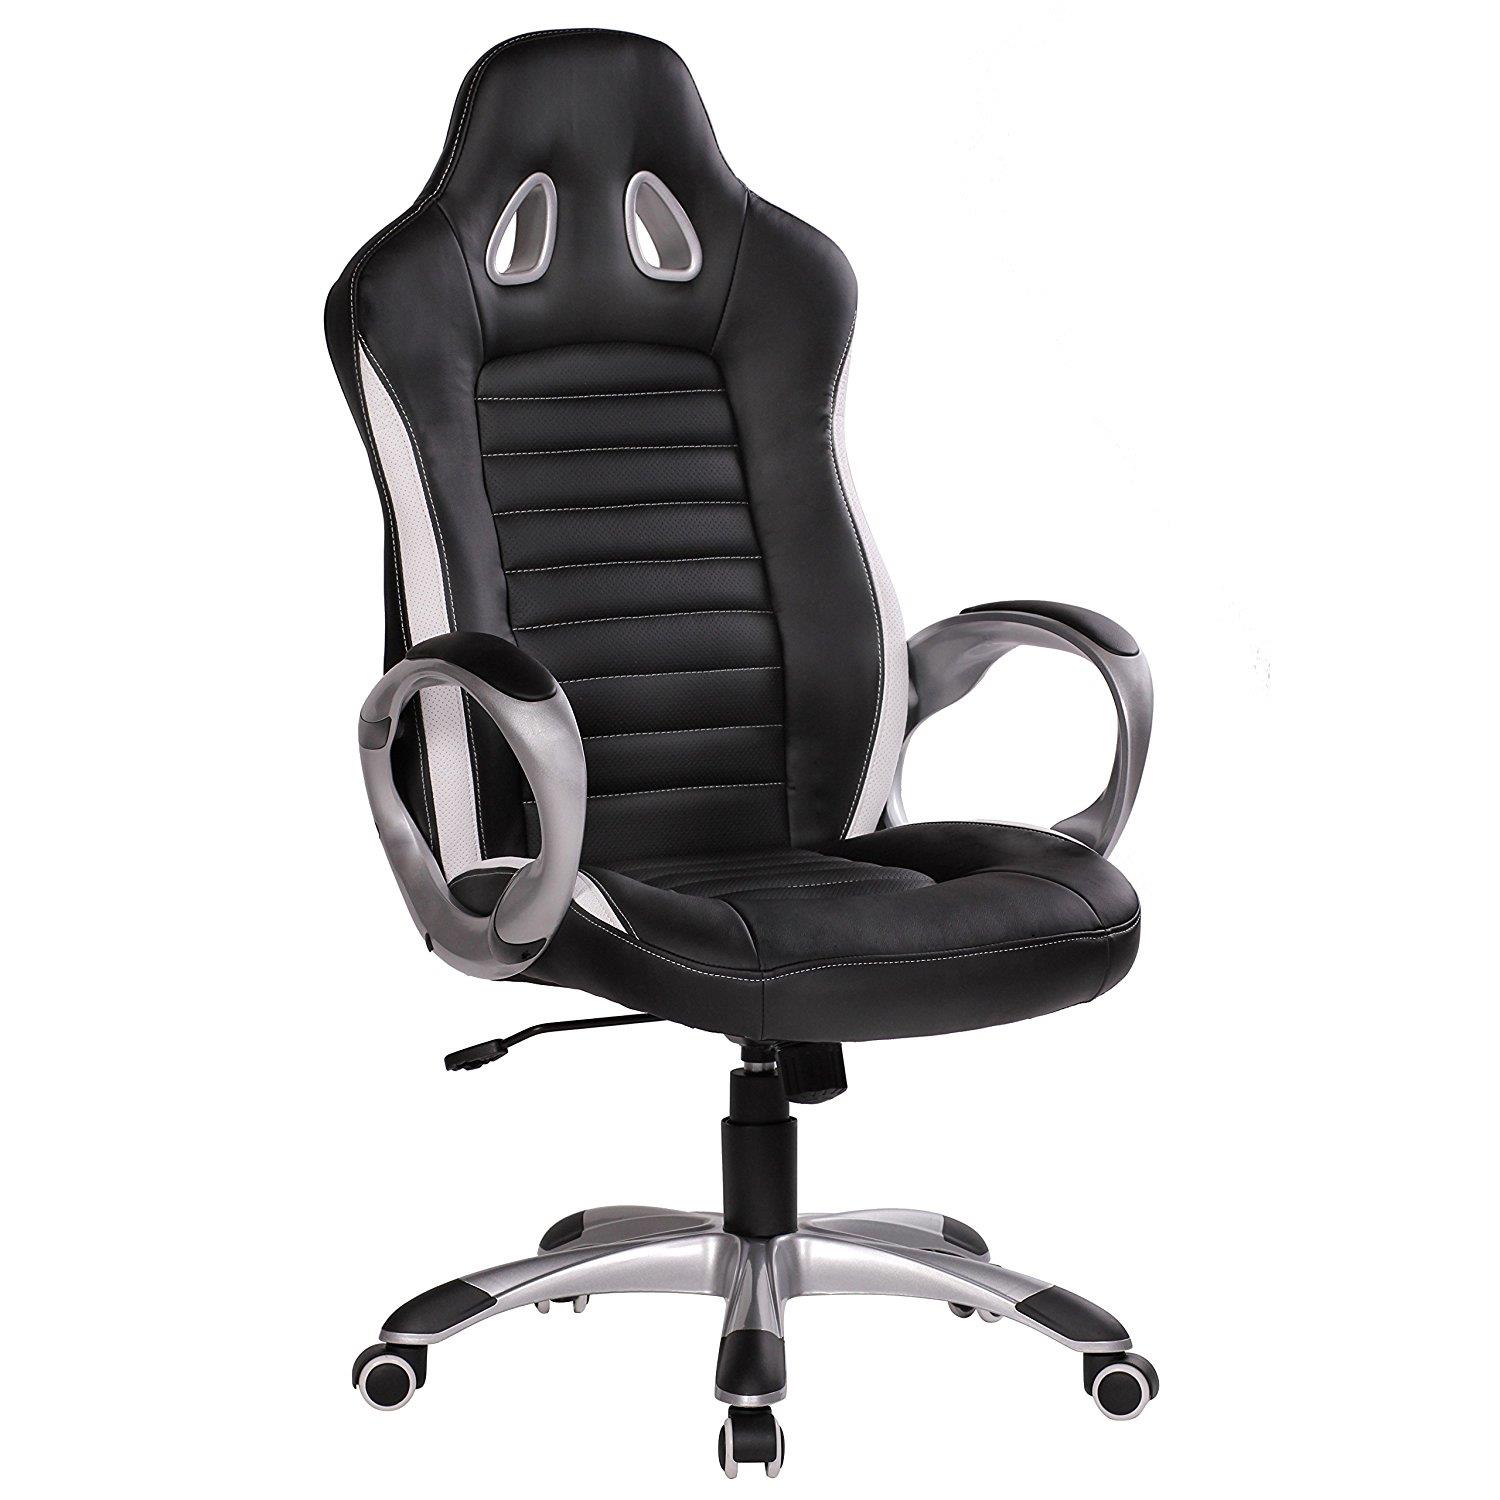 Cadeira gaming MUSAKU, design moderno e conforto cor preto